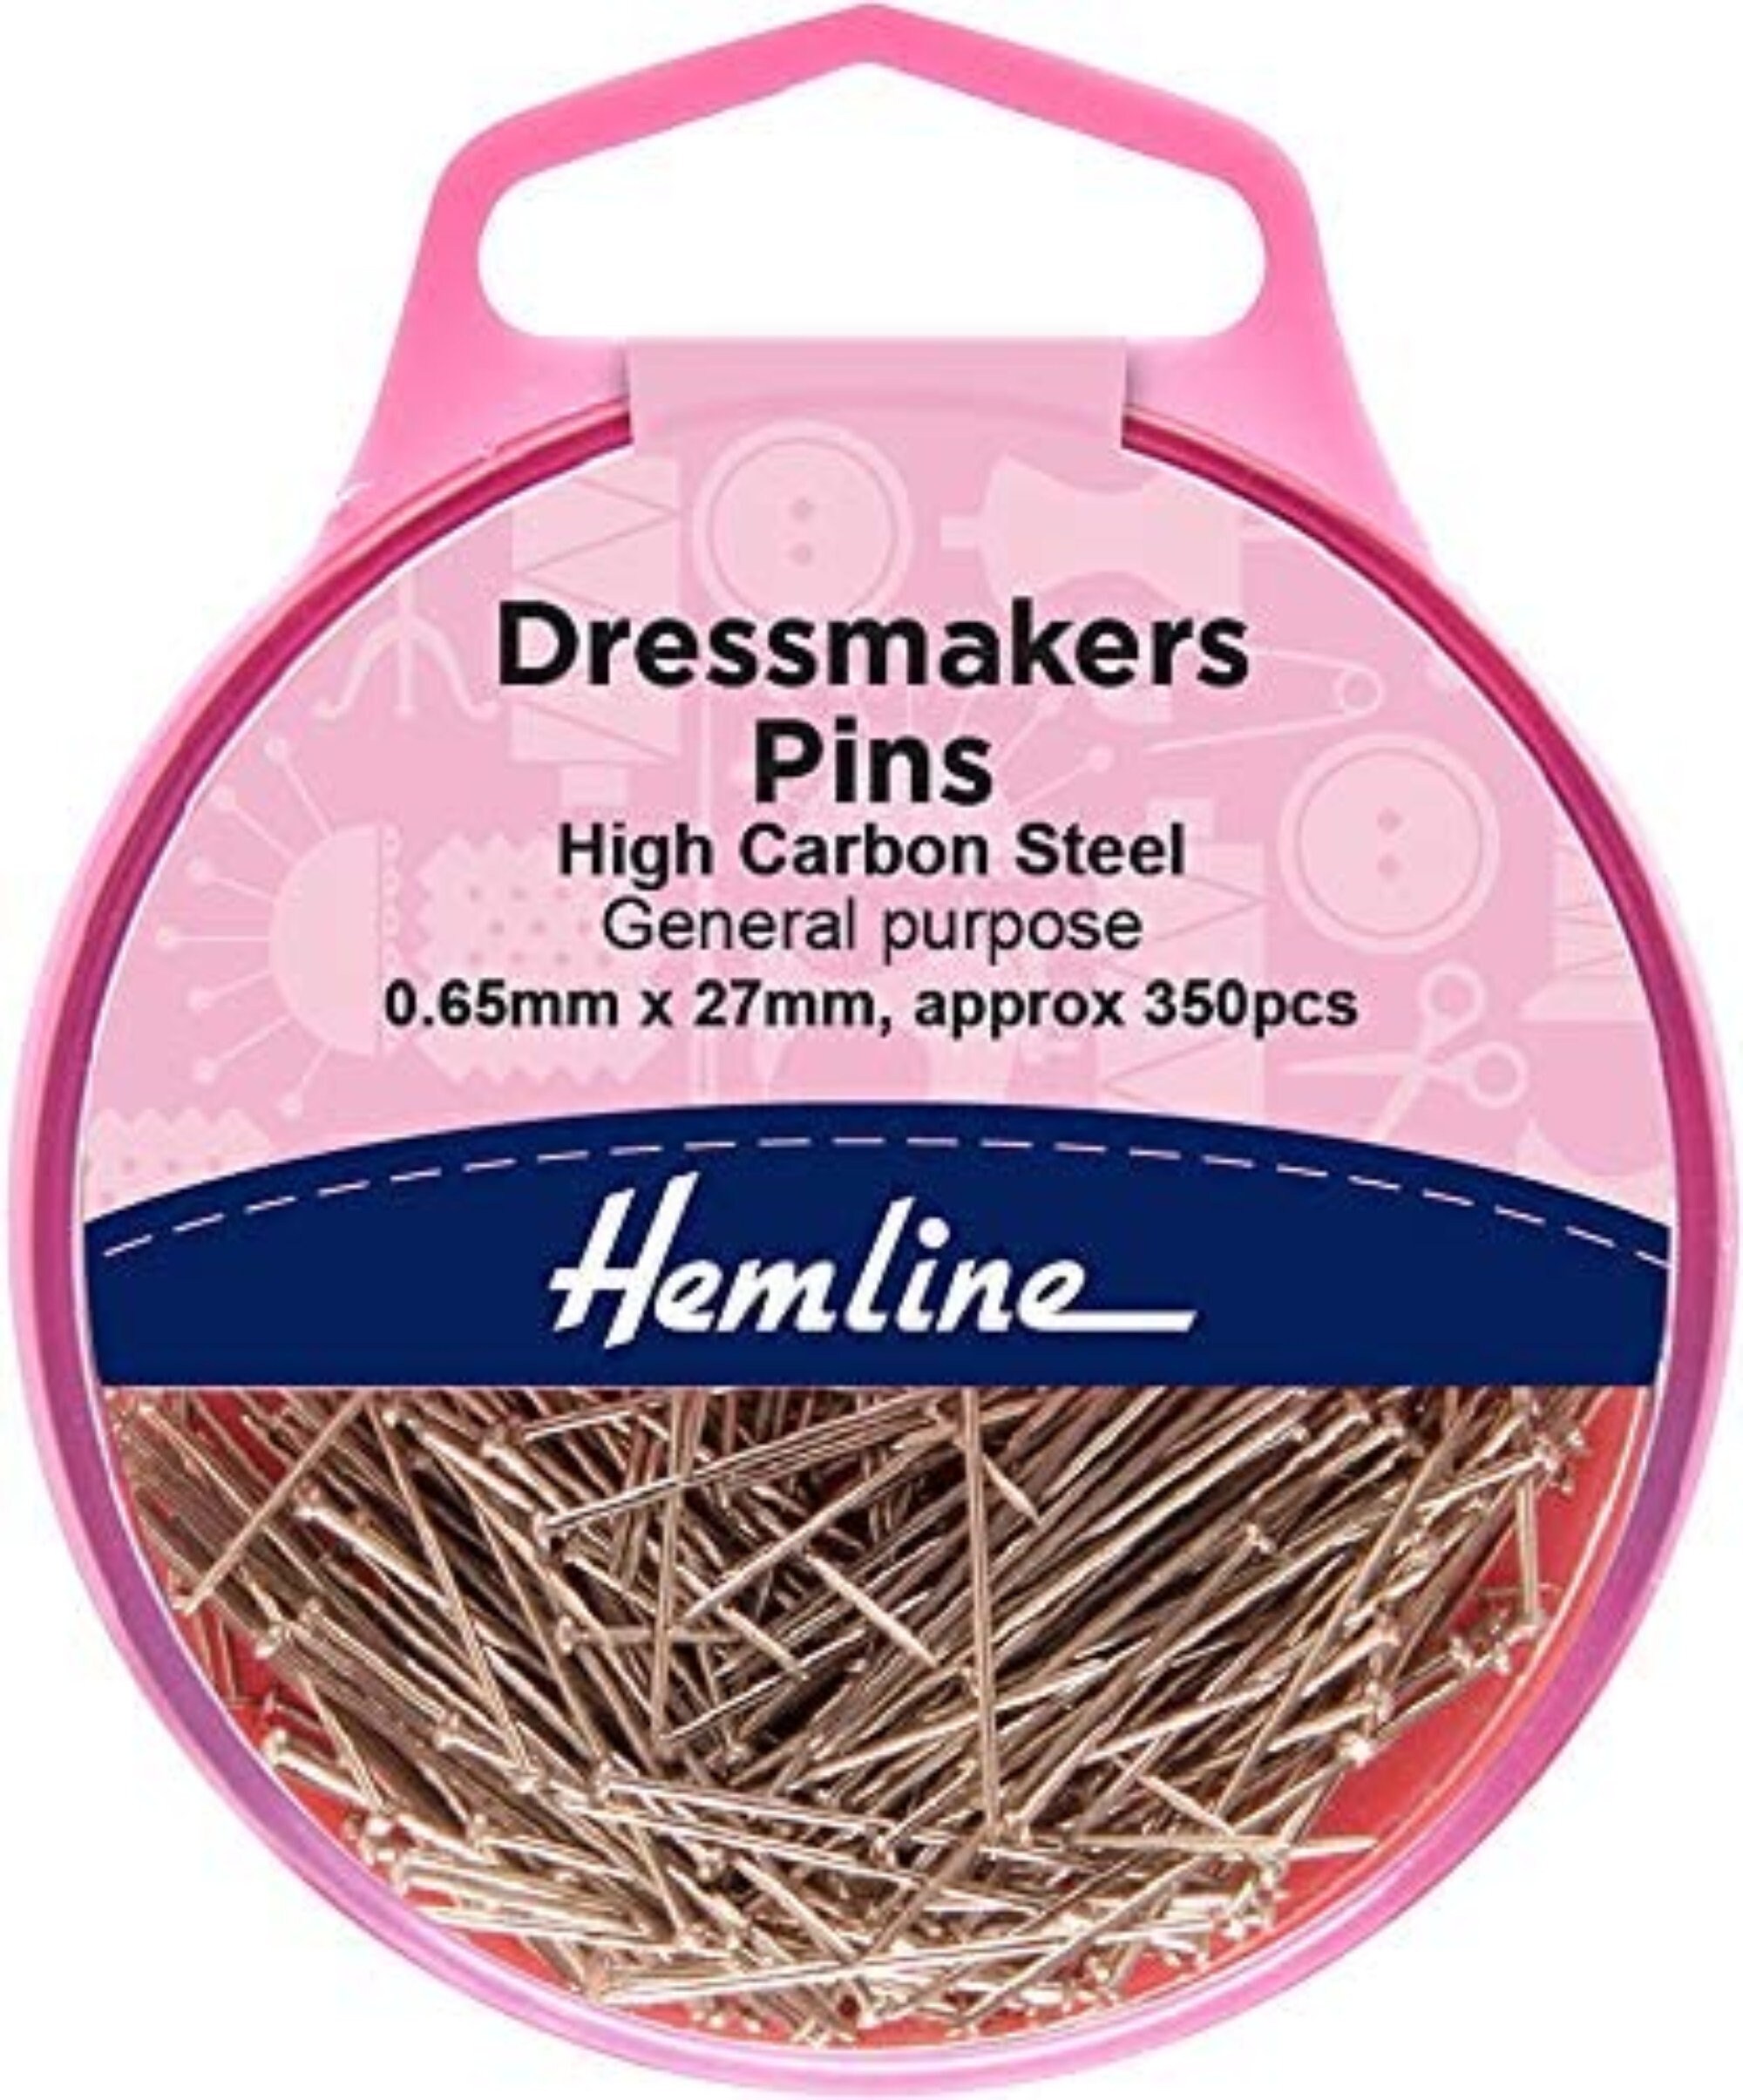 Iron Head Pins, Blob Dress Pins, Straight Pins, Dressmaker Pins, Sewing Pin  for DIY Sewing and Crafts, Blob Shaped Dress Pins 